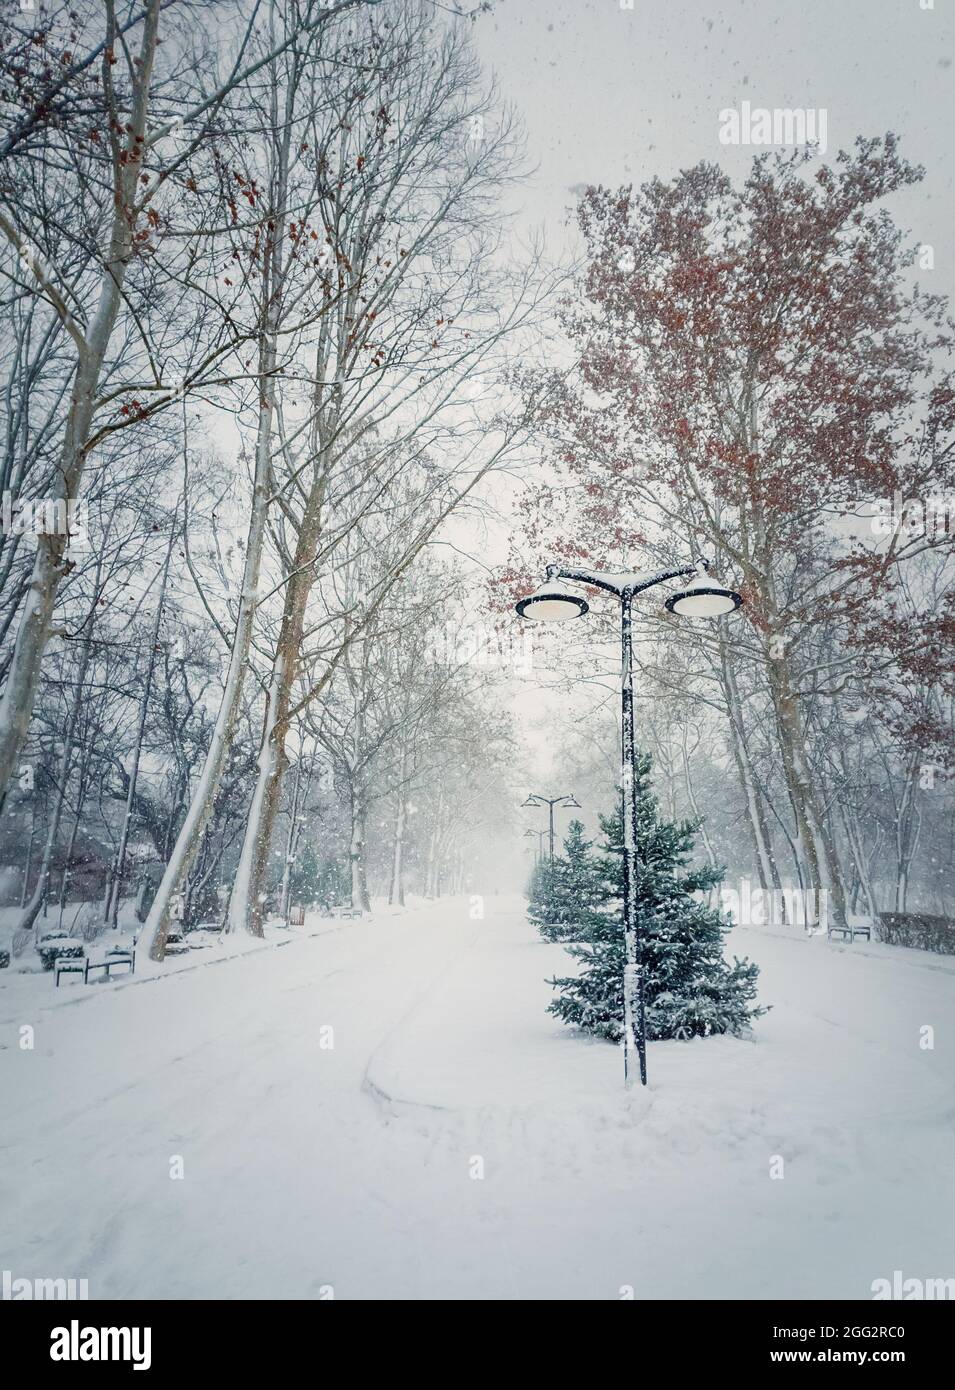 Kalte, verschneite Wintermorgen im Park mit mehreren Schneeflocken vom Himmel fallen. Schöne Szene, kalte Jahreszeit, Schneefall Atmosphäre auf dem Platz. Stockfoto